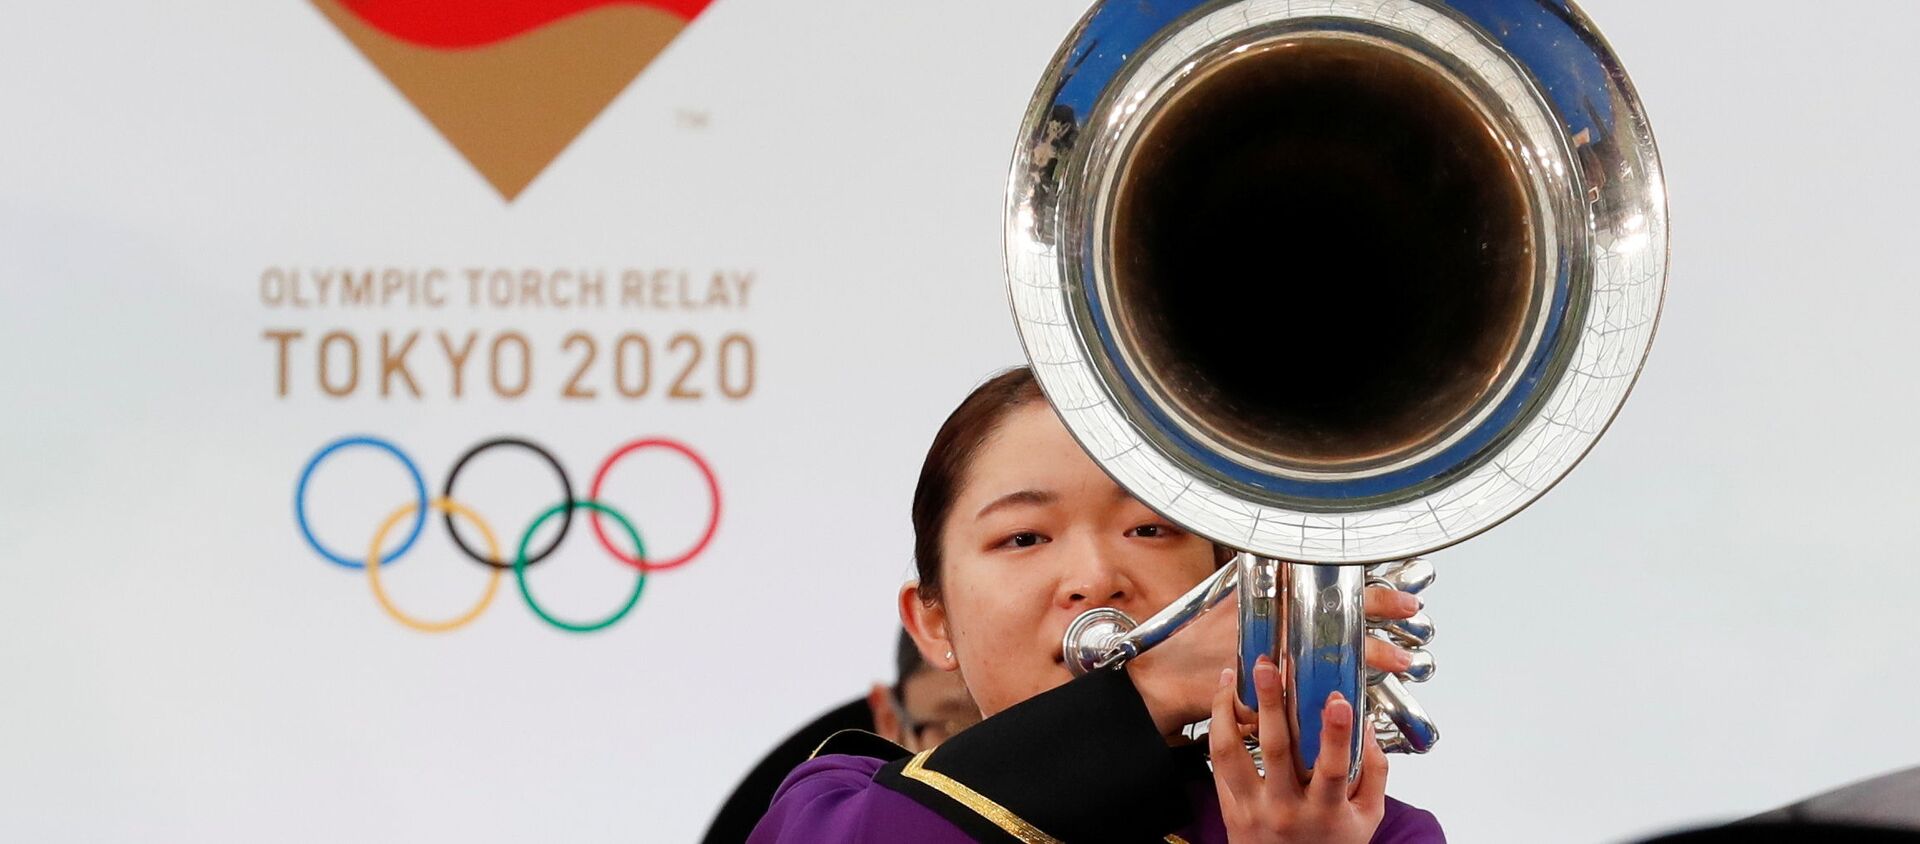 Участник оркестра  играет на музыкальном инструменте во время эстафеты Олимпийского огня в Токио-2020 в префектуре Фукусима, Япония - Sputnik Армения, 1920, 22.07.2021